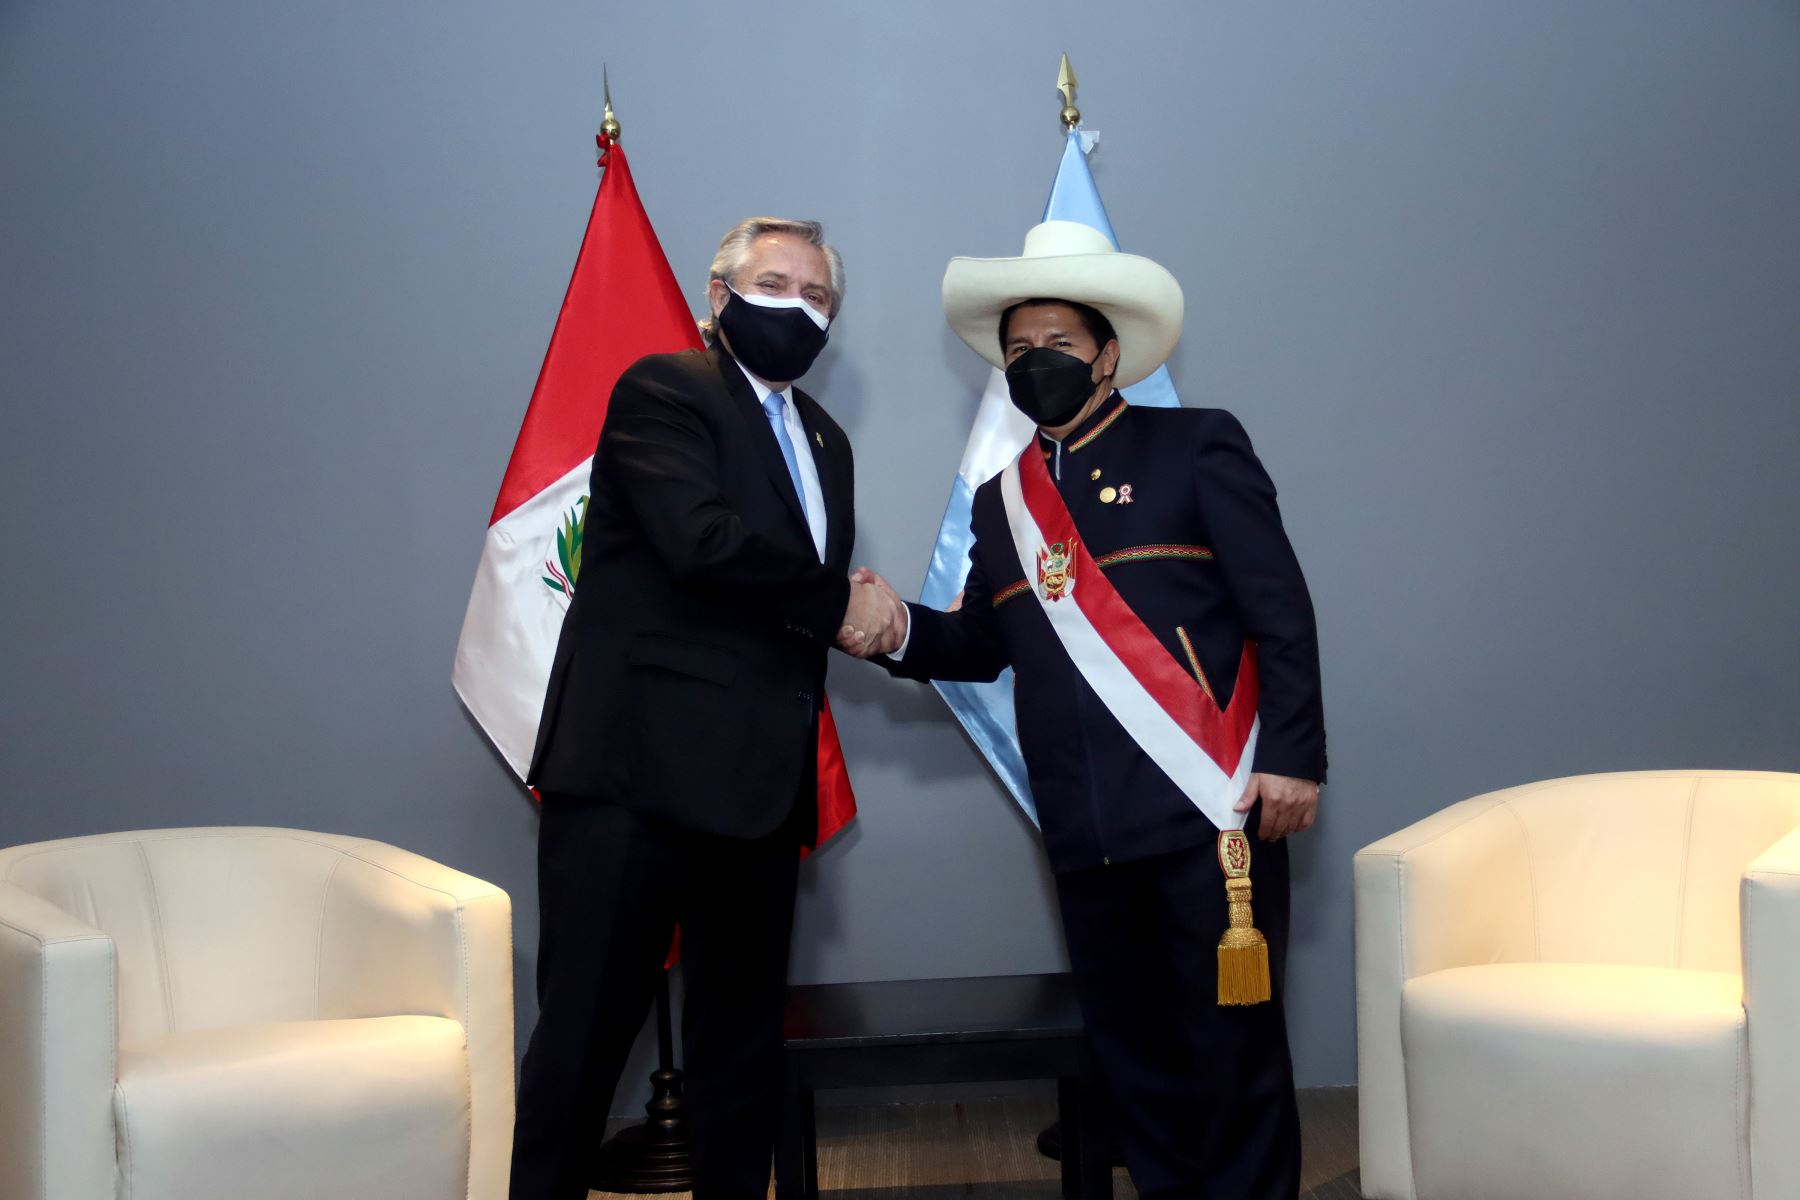 El presidente de la RepÃºblica Pedro castillo sostuvo una reuniÃ³n bilateral con el presidente de Argentina Alberto FernÃ¡ndez.
Foto: ANDINA/Prensa Presidencia